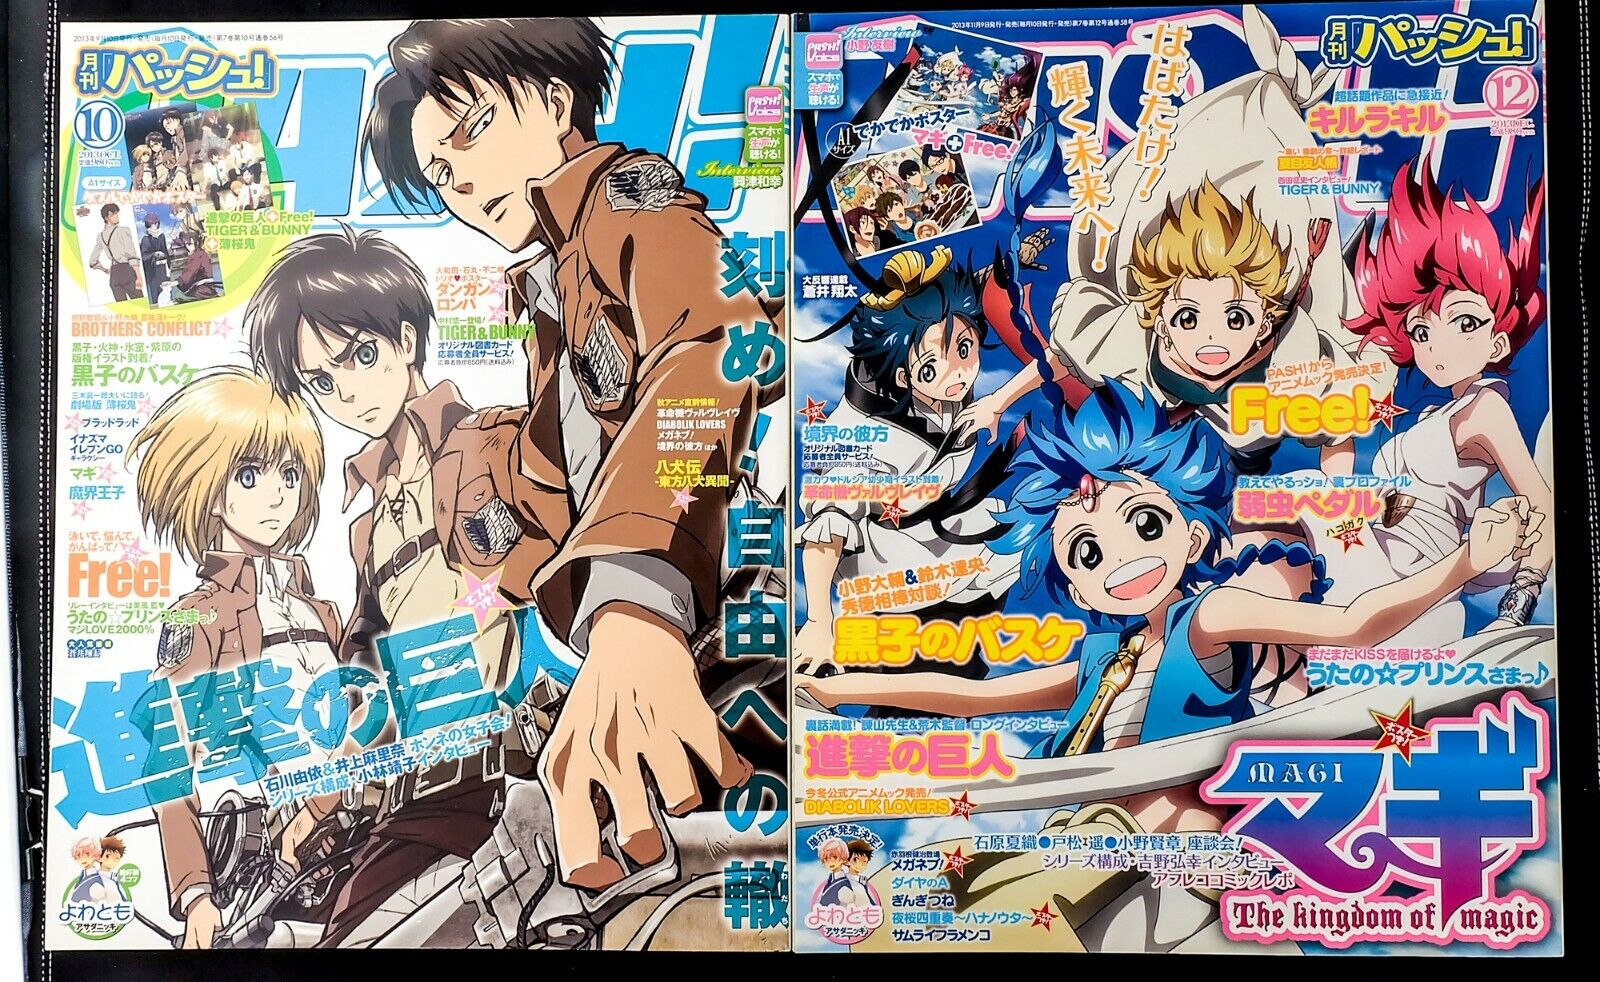 Pash Pash 13 Oct 13 Dec Japanese Magazine Anime Manga Manga Ebay